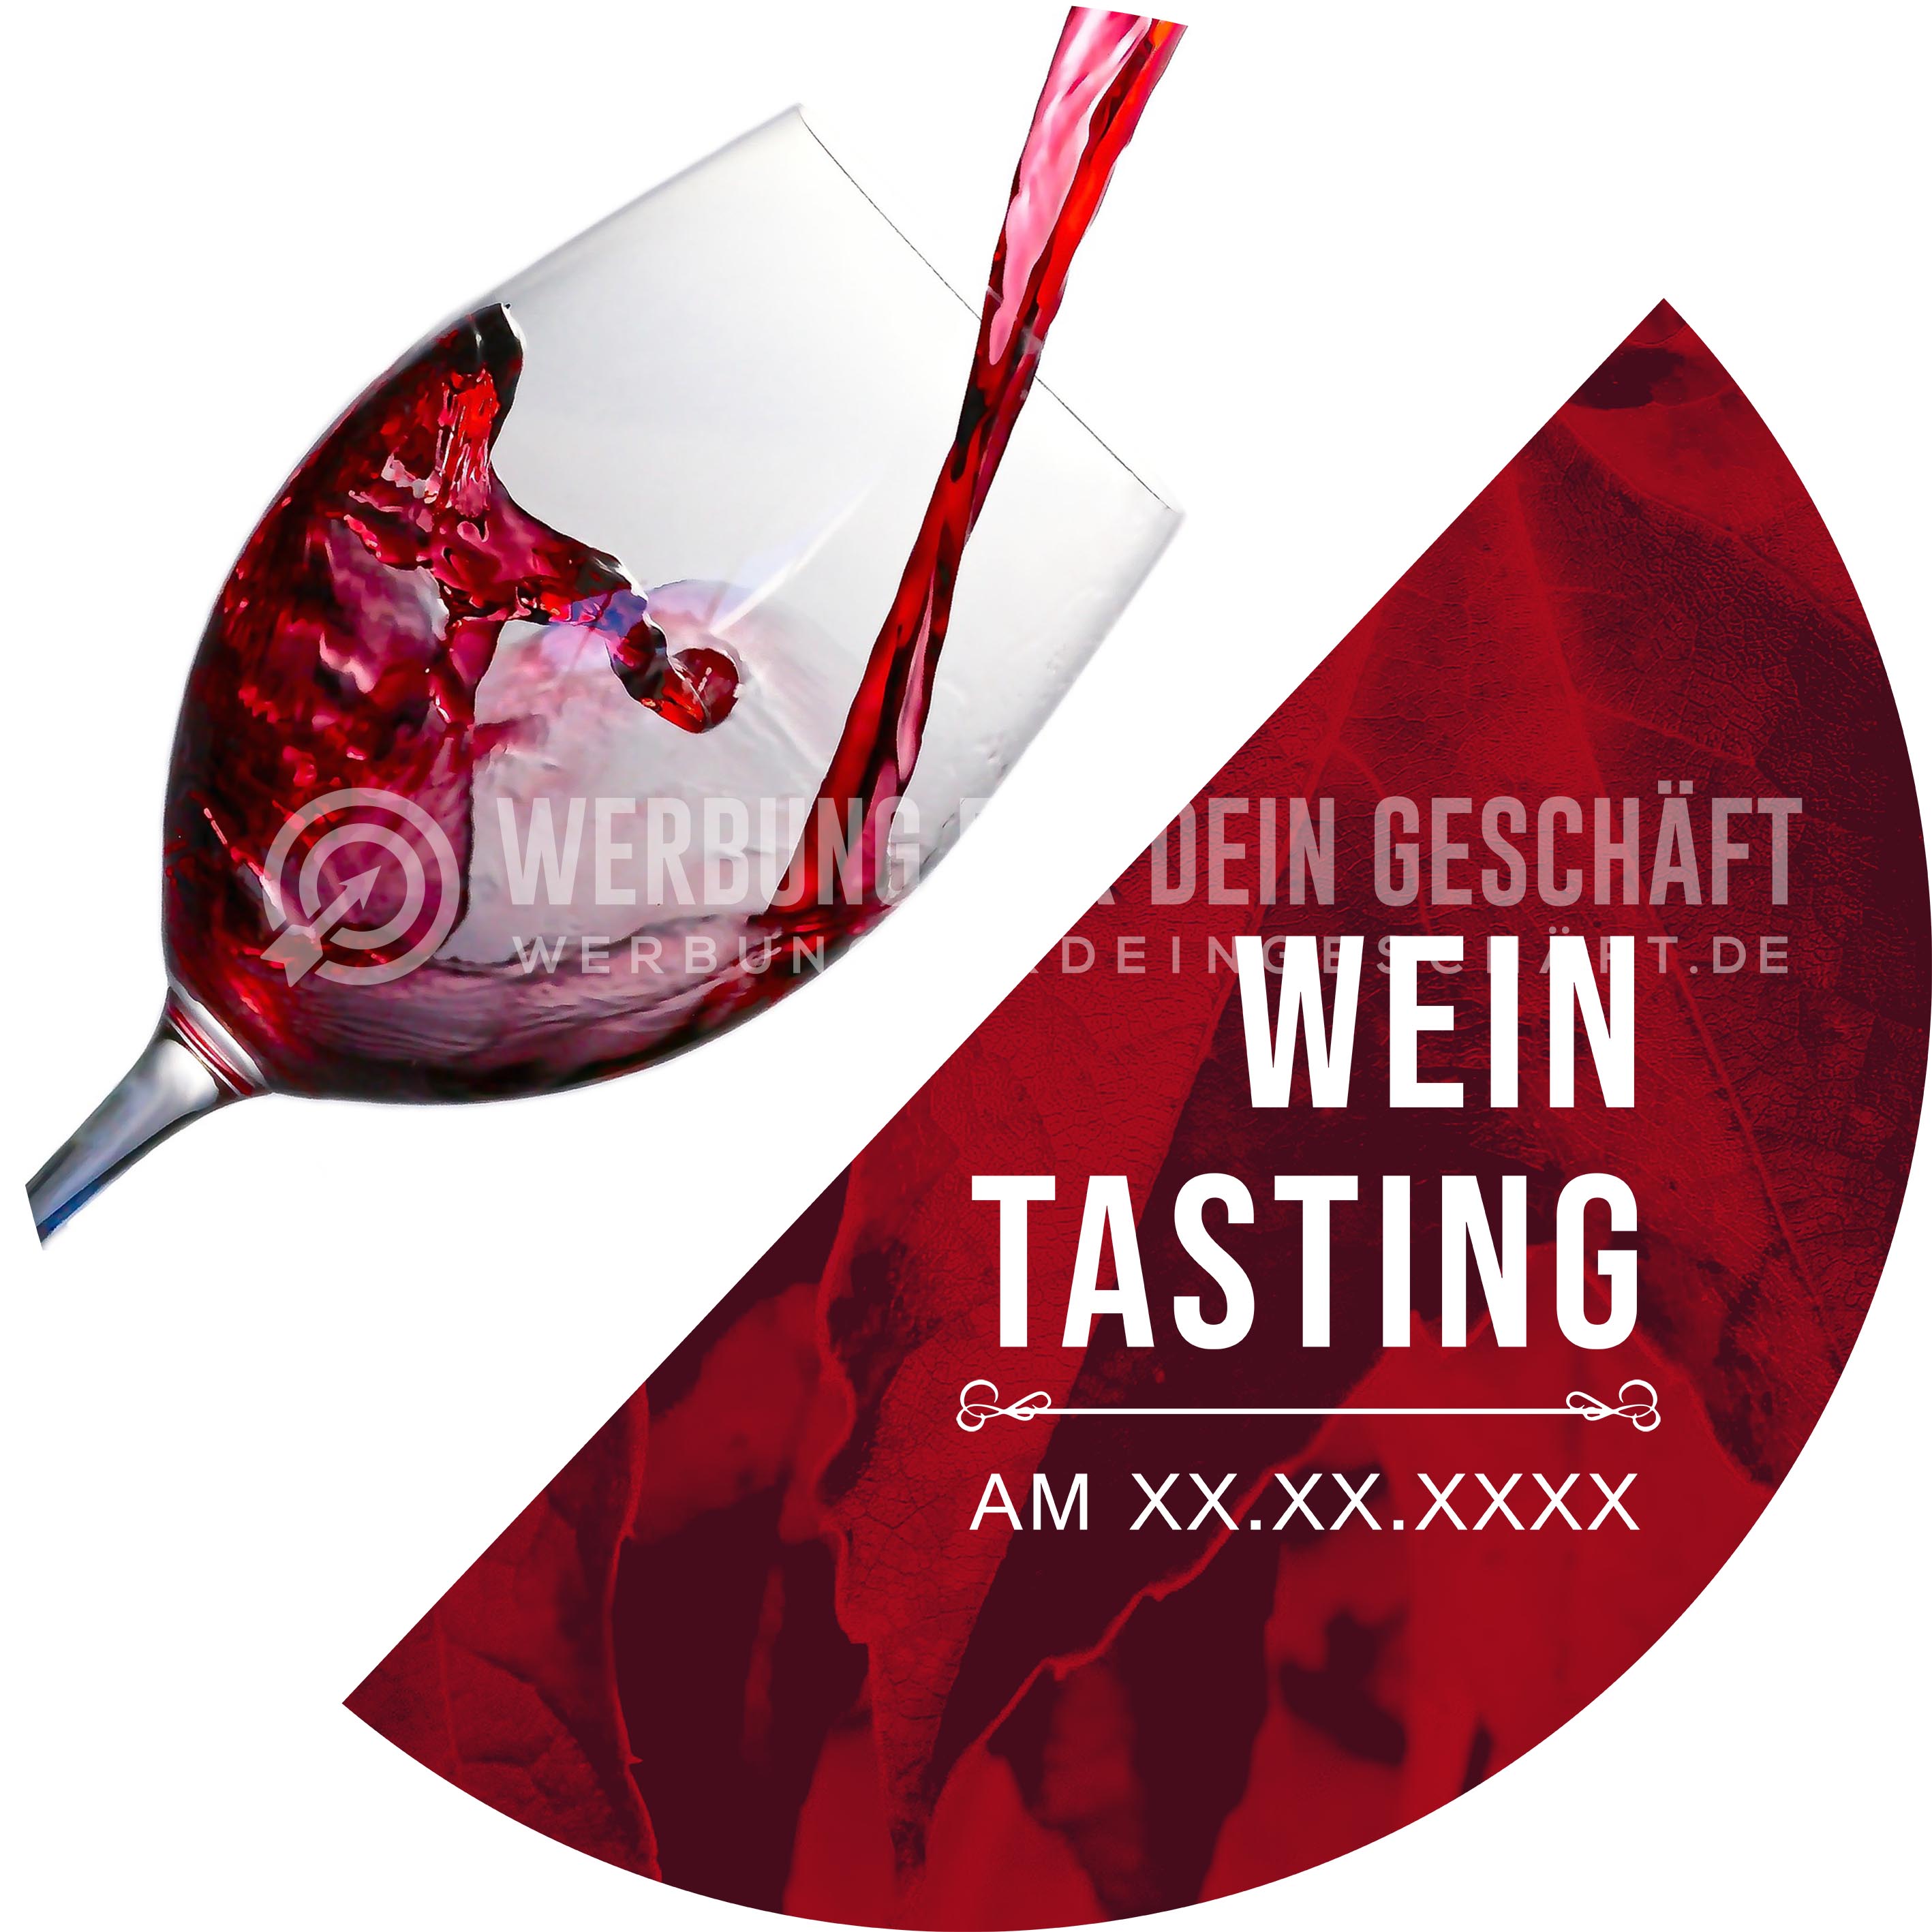  Rund | Wein Tasting Poster | Werbeposter für Wein | Rundformat